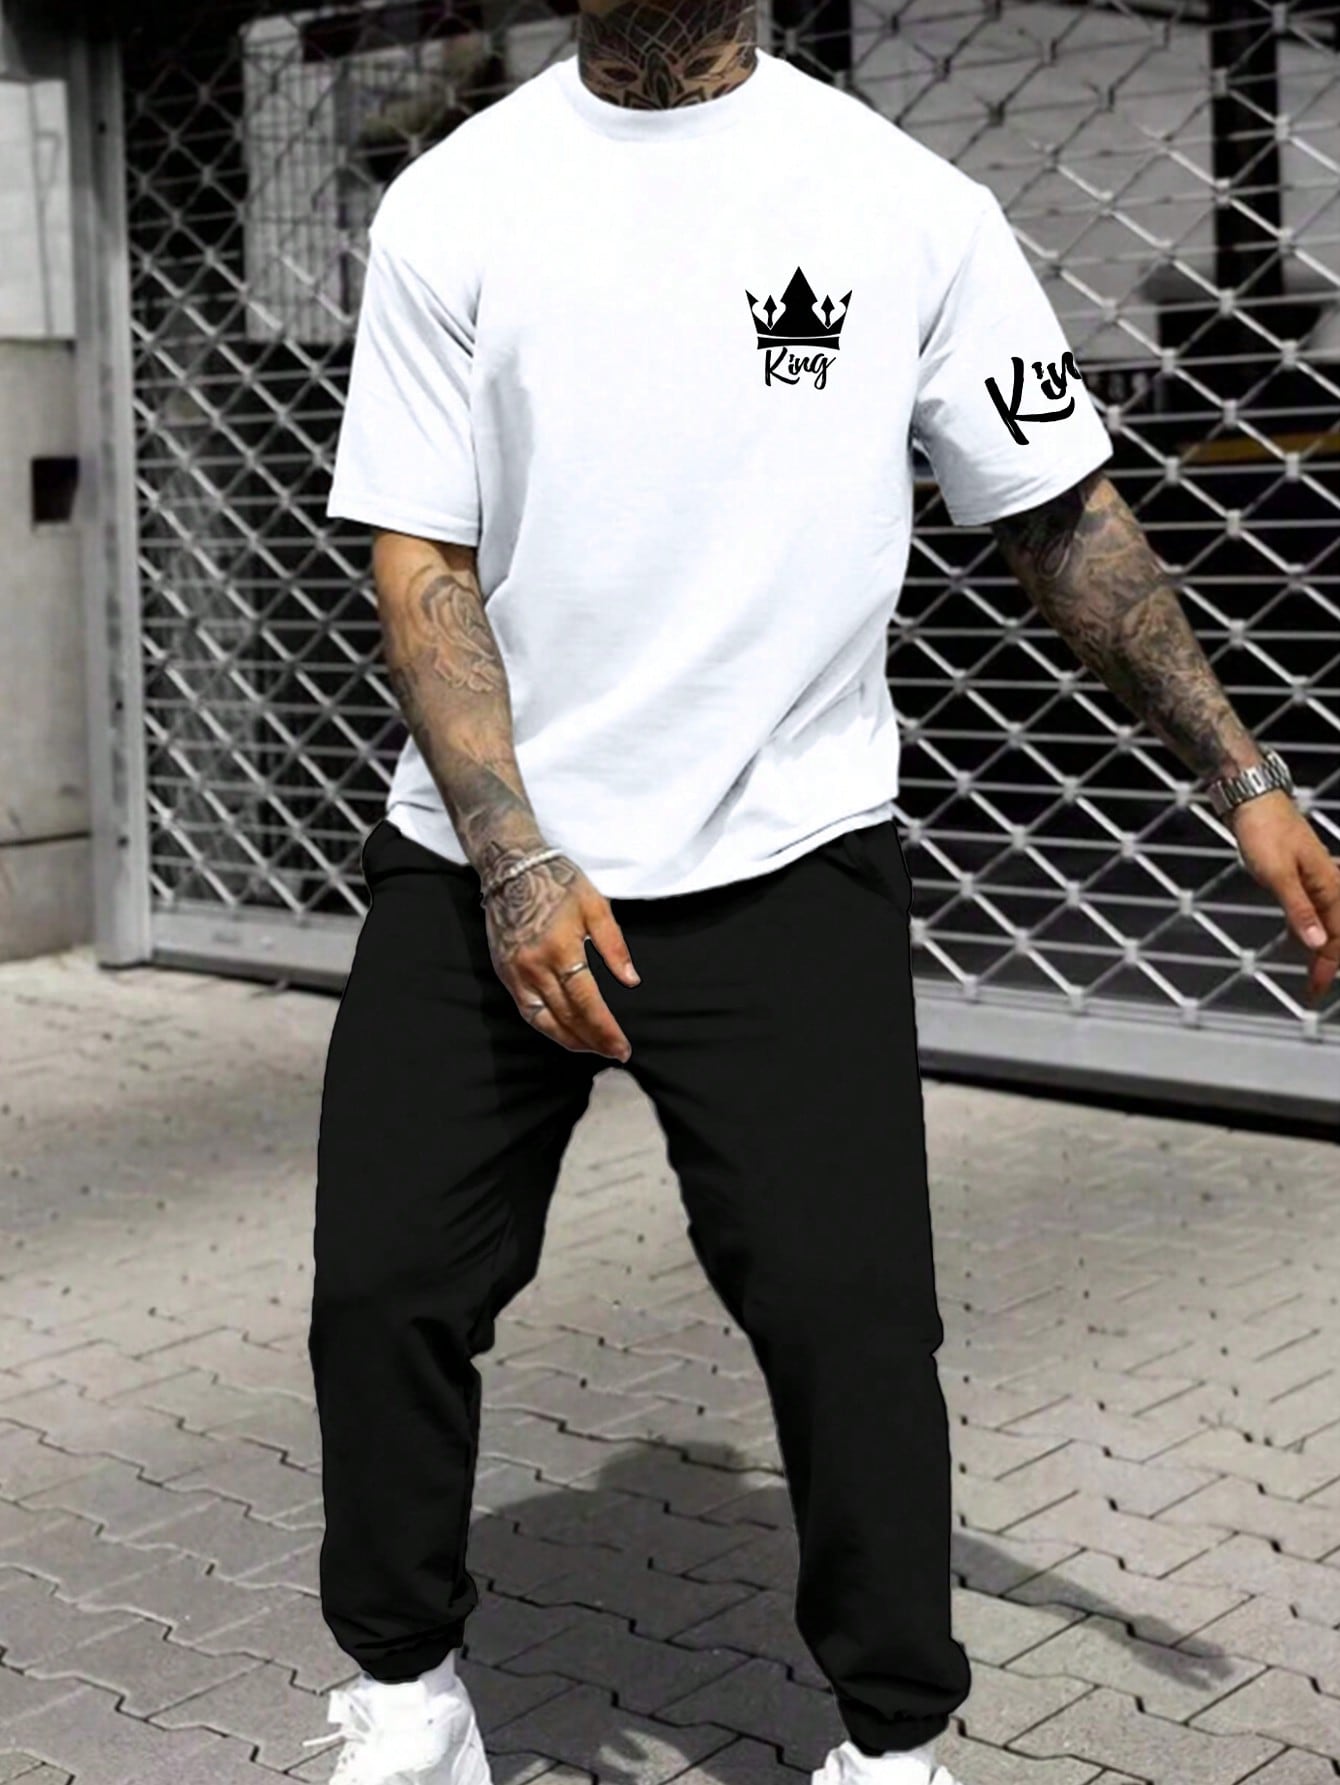 Мужская футболка с короткими рукавами и принтом короны Manfinity Homme, черное и белое